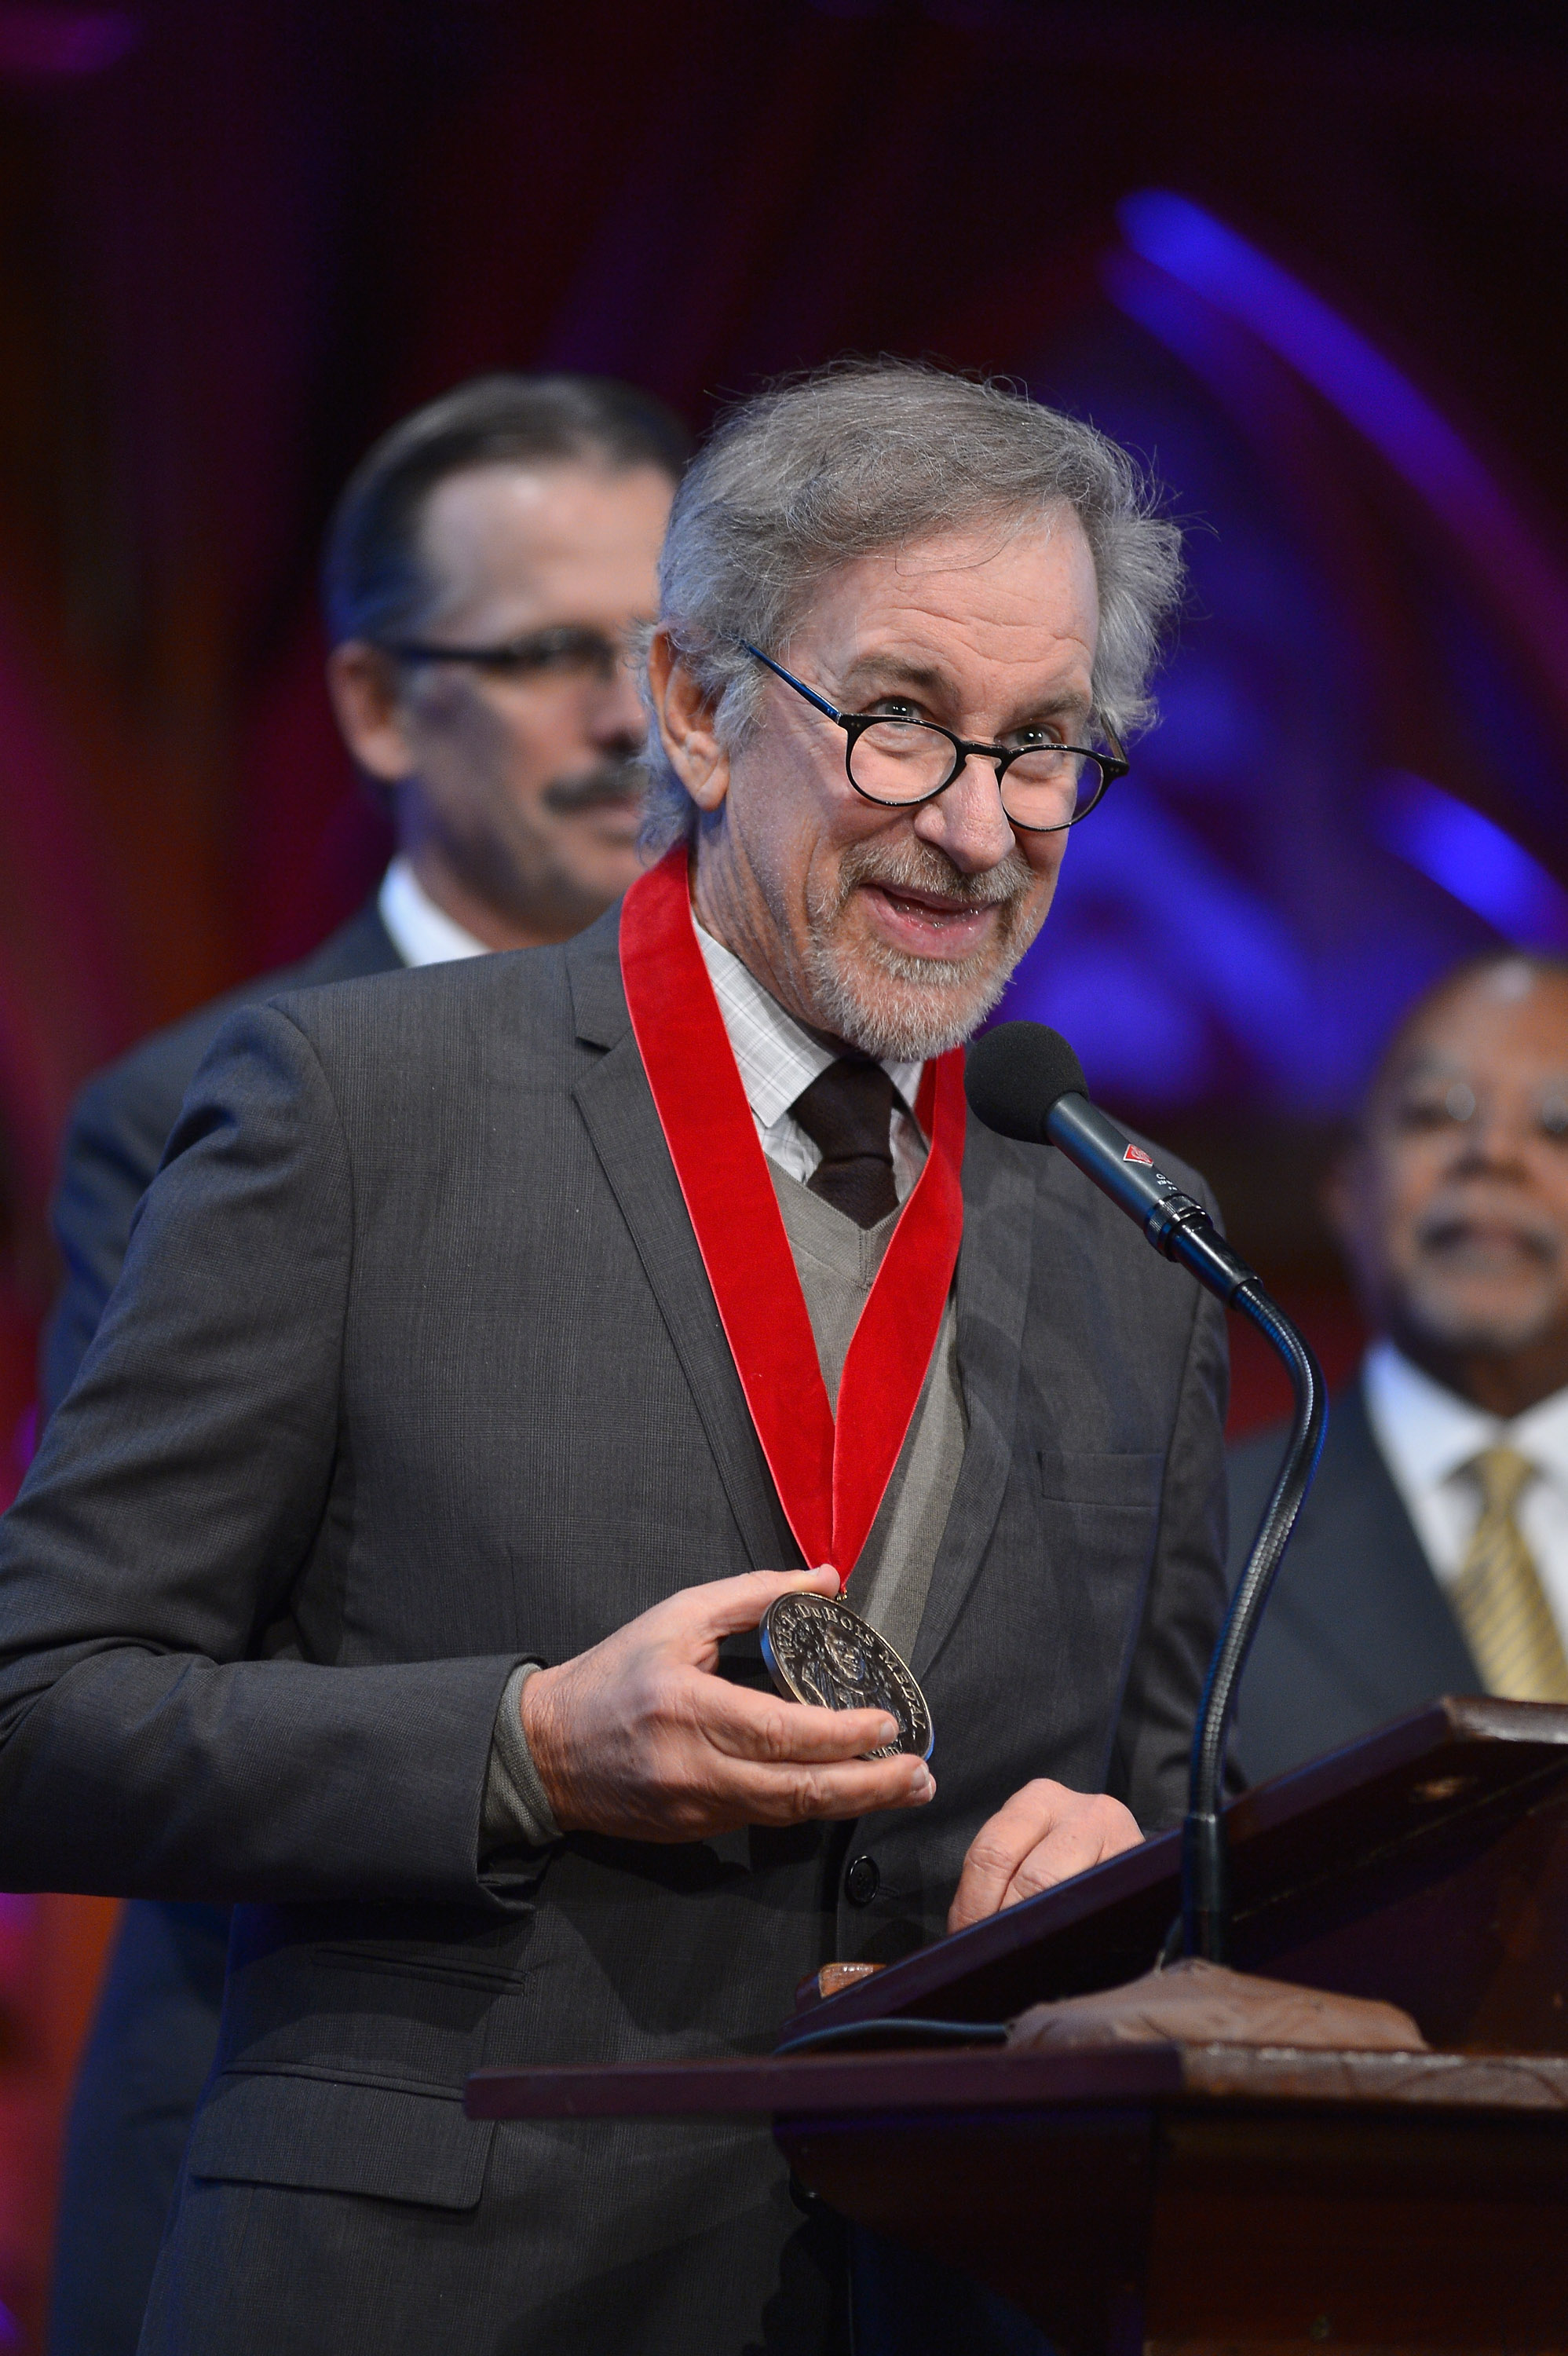 Steven Spielberg at Harvard 